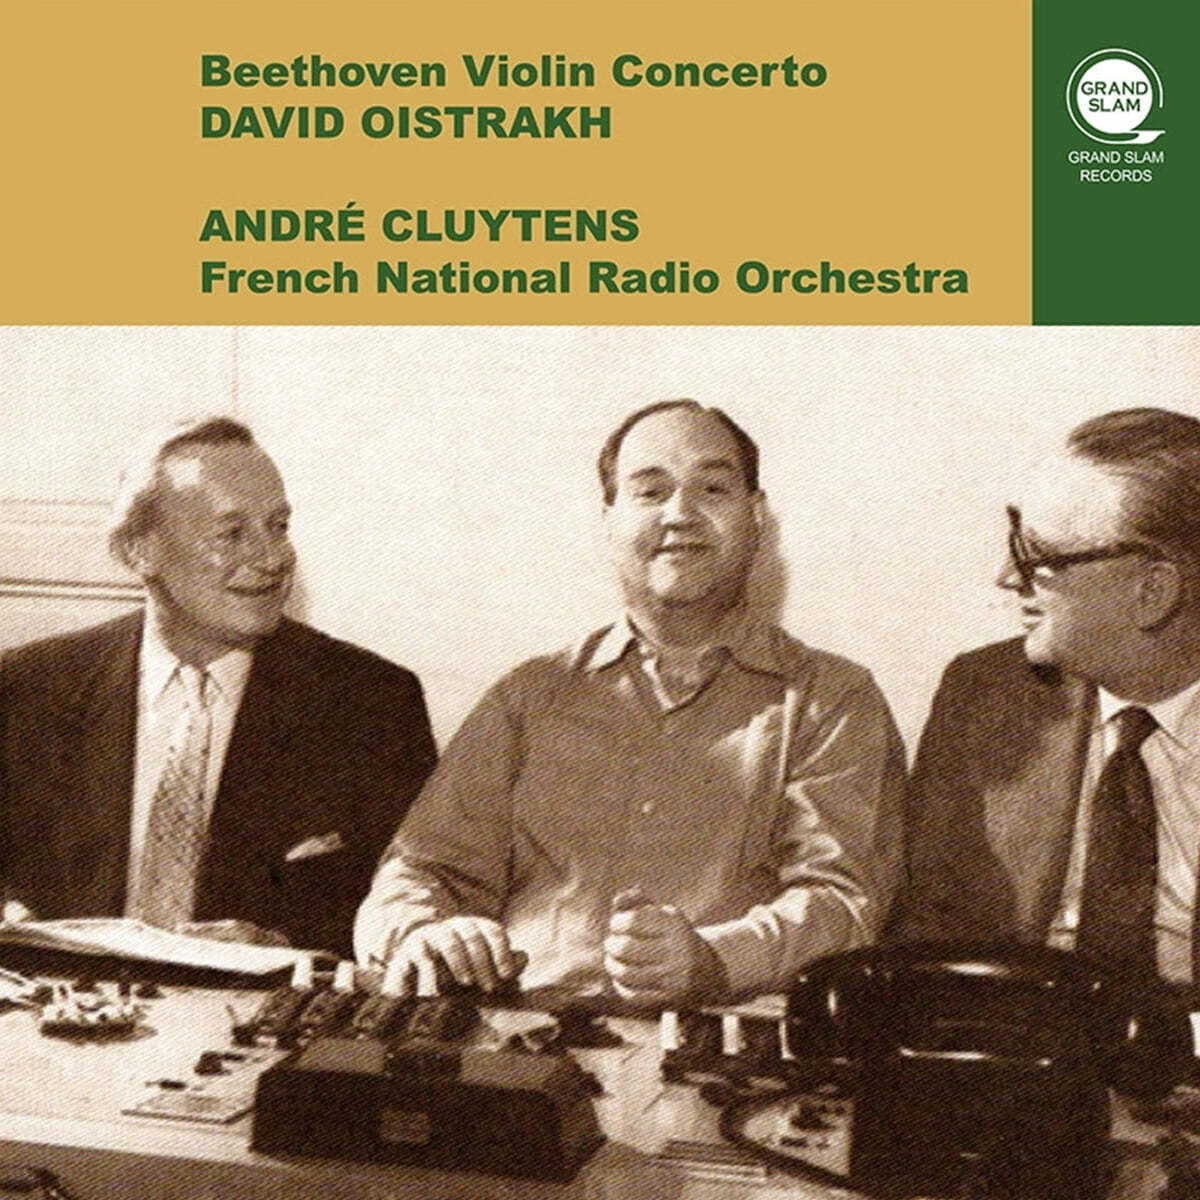 David Oistrakh / Andre Cluytens 베토벤: 바이올린 협주곡 D장조 (Beethoven: Violin Concerto Op.61) 